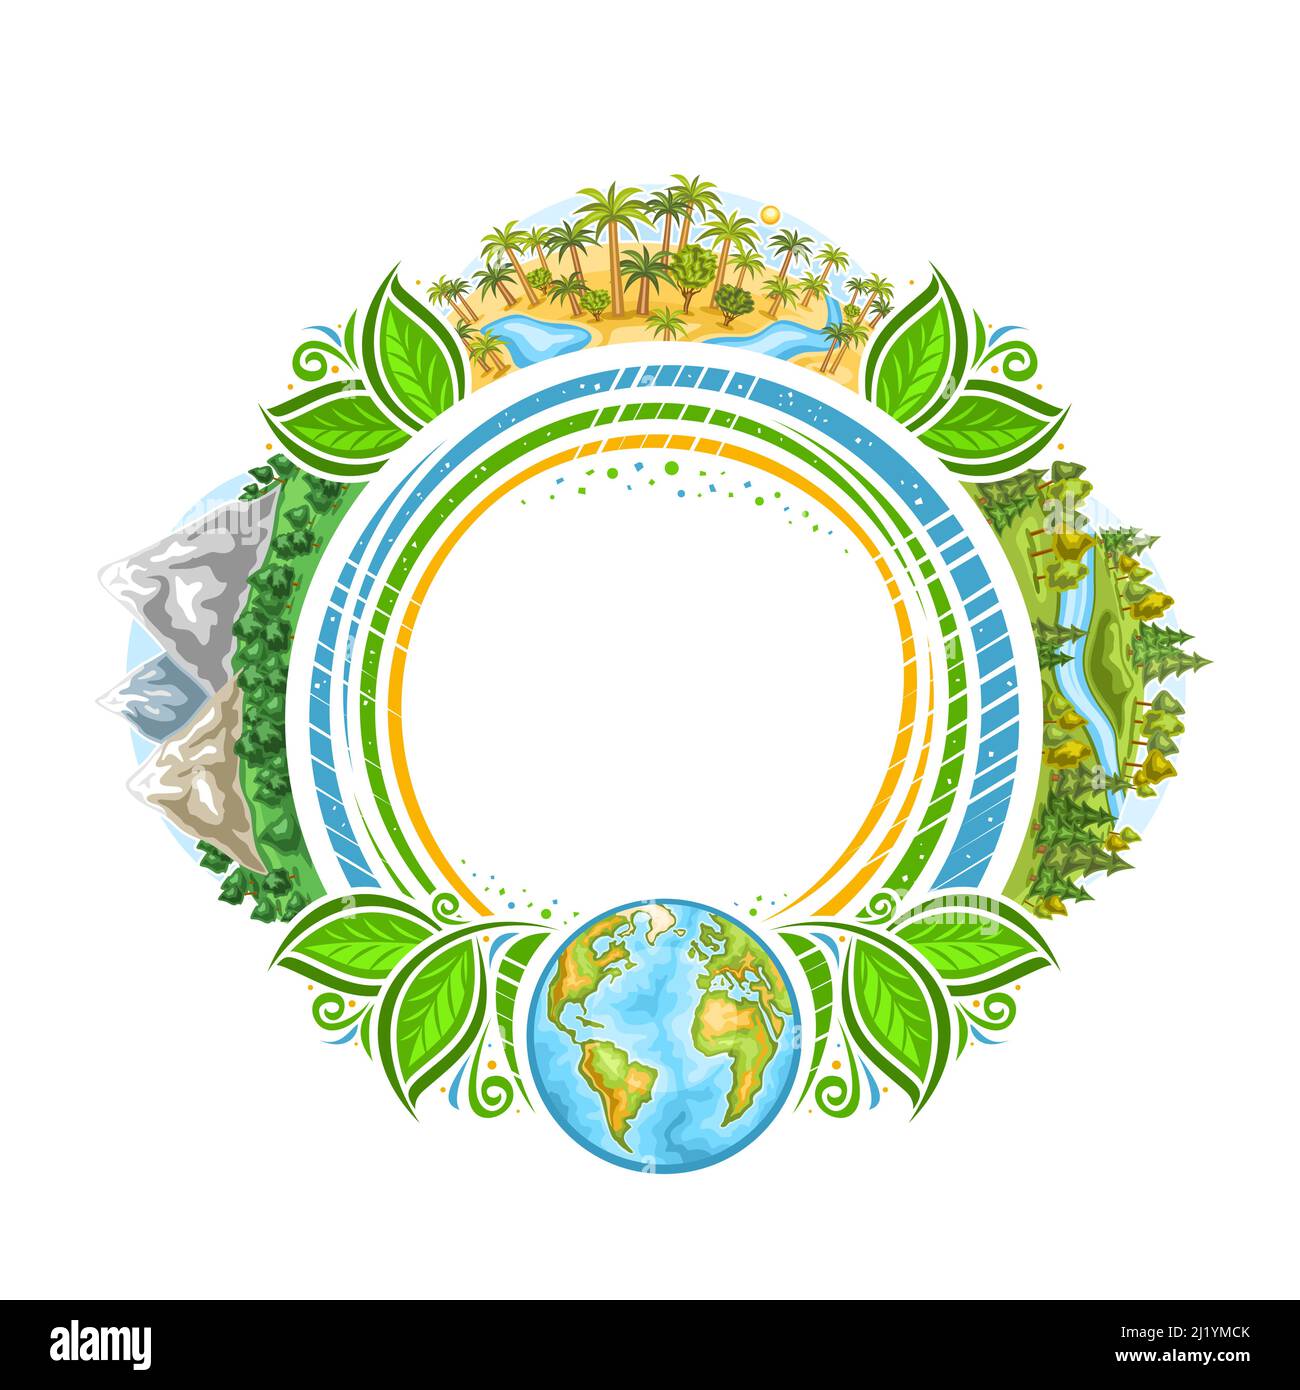 Vektorrahmen für Earth Day Holiday mit Copyspace für Grußtext, Kreis dekoratives Abzeichen mit Abbildung der Berge, afrikanische Wüstenoase Stock Vektor